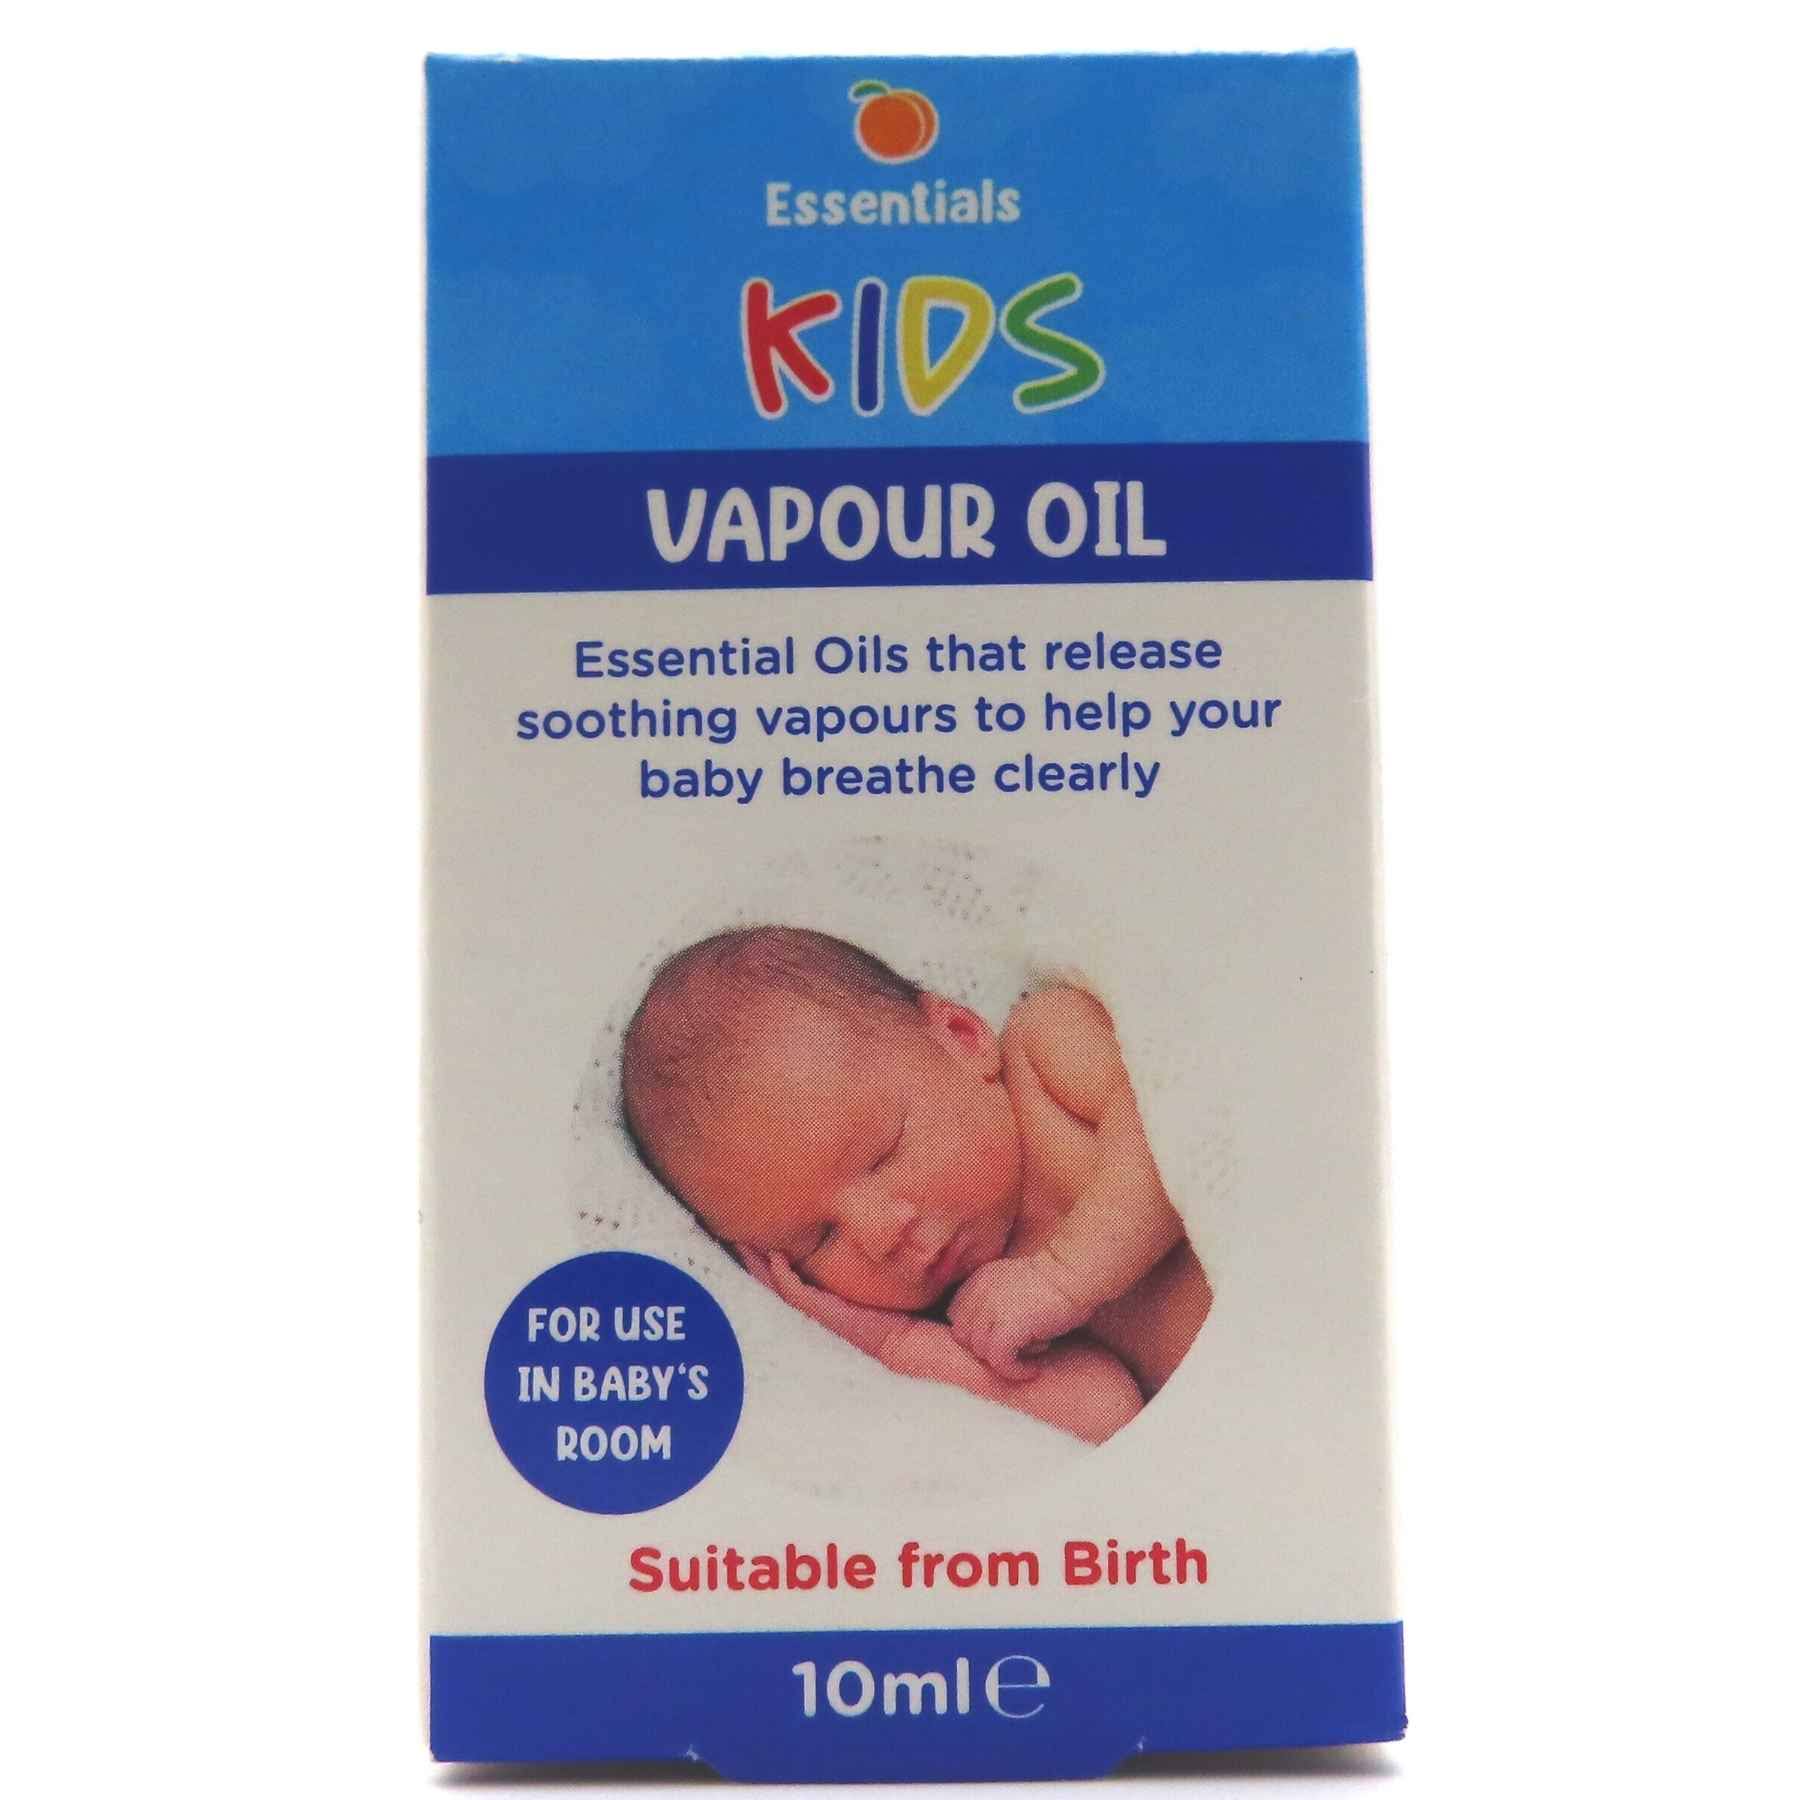 Essentials Kids Vapour Oil